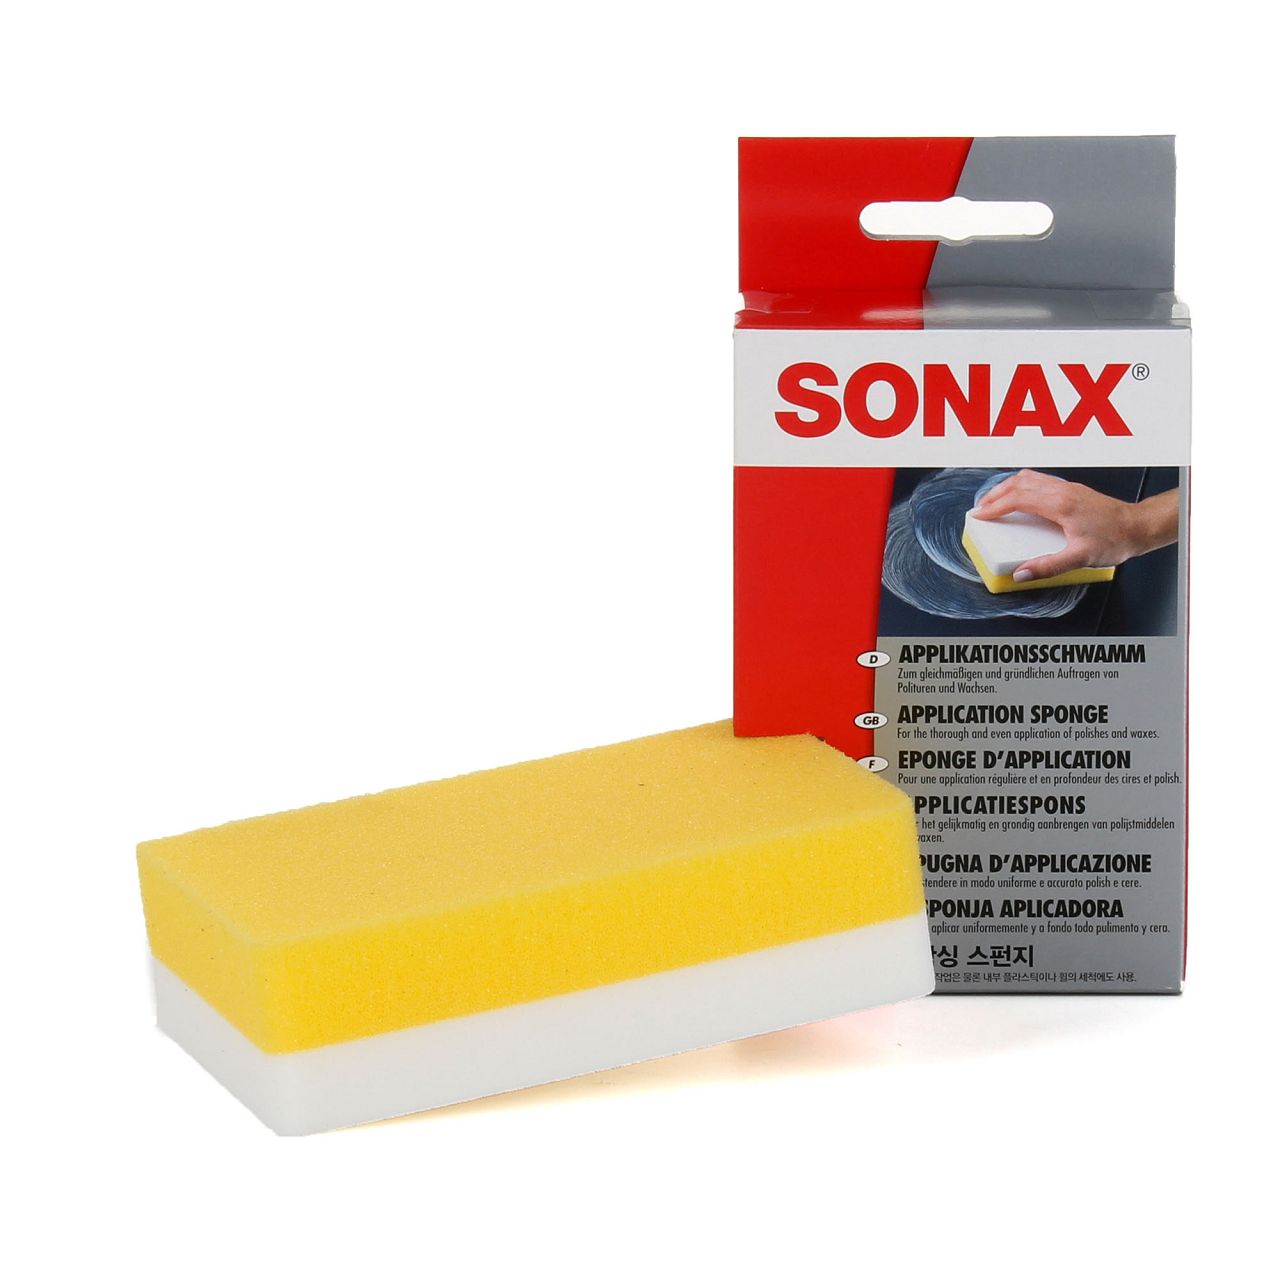 SONAX ApplikationsSchwamm Schwamm Reinigung 1 Stück 417300